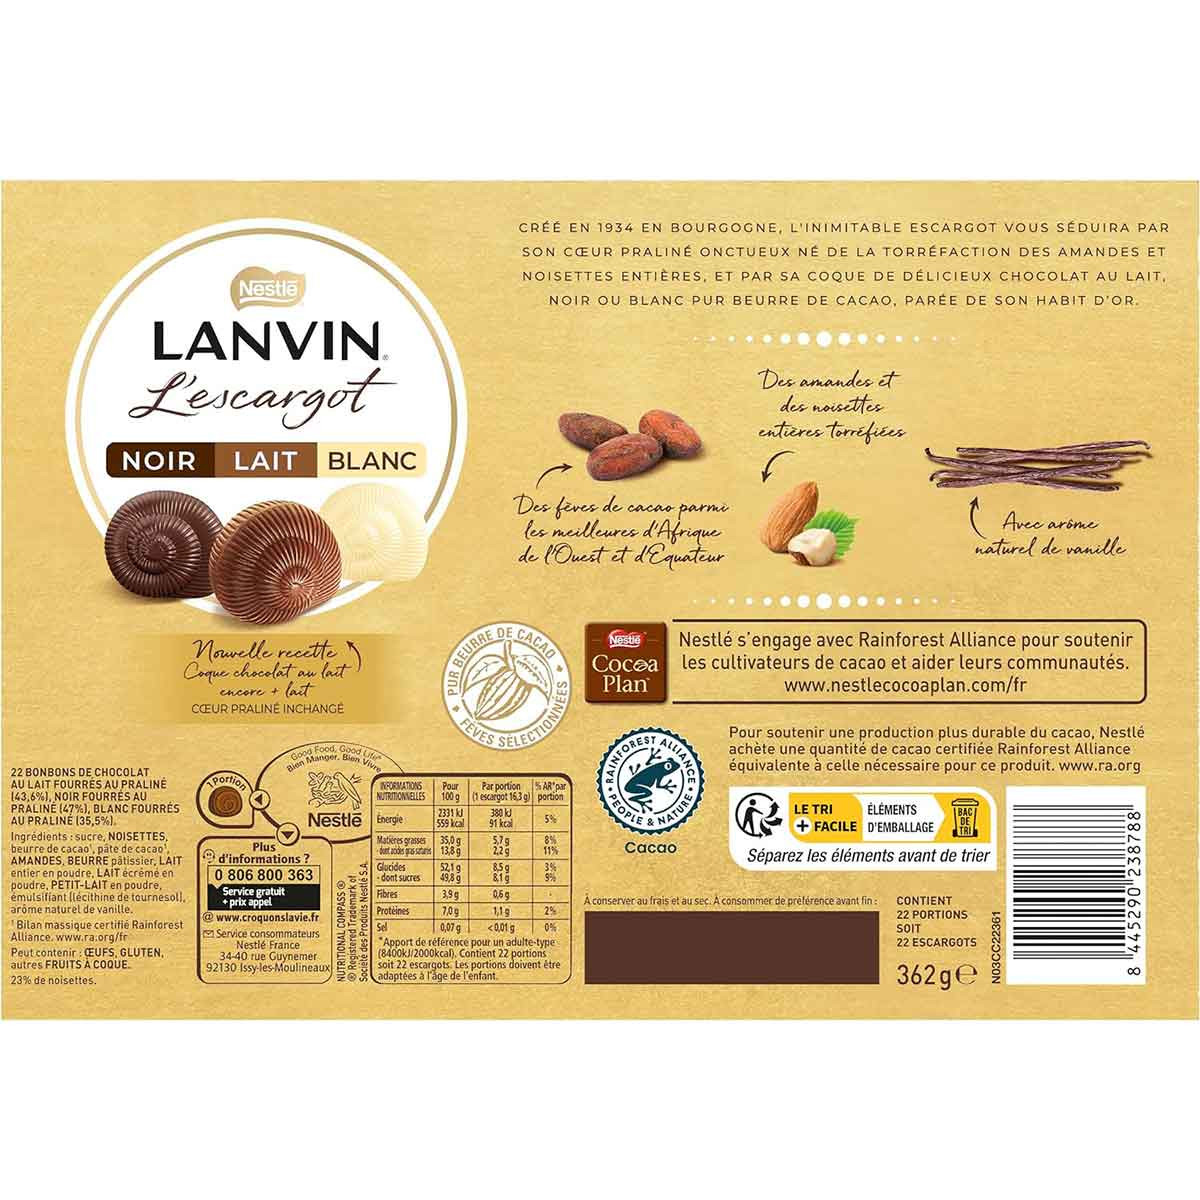 Coffret Lanvin L'escargot Chocolats Noir, Lait, Blanc - 362 gr